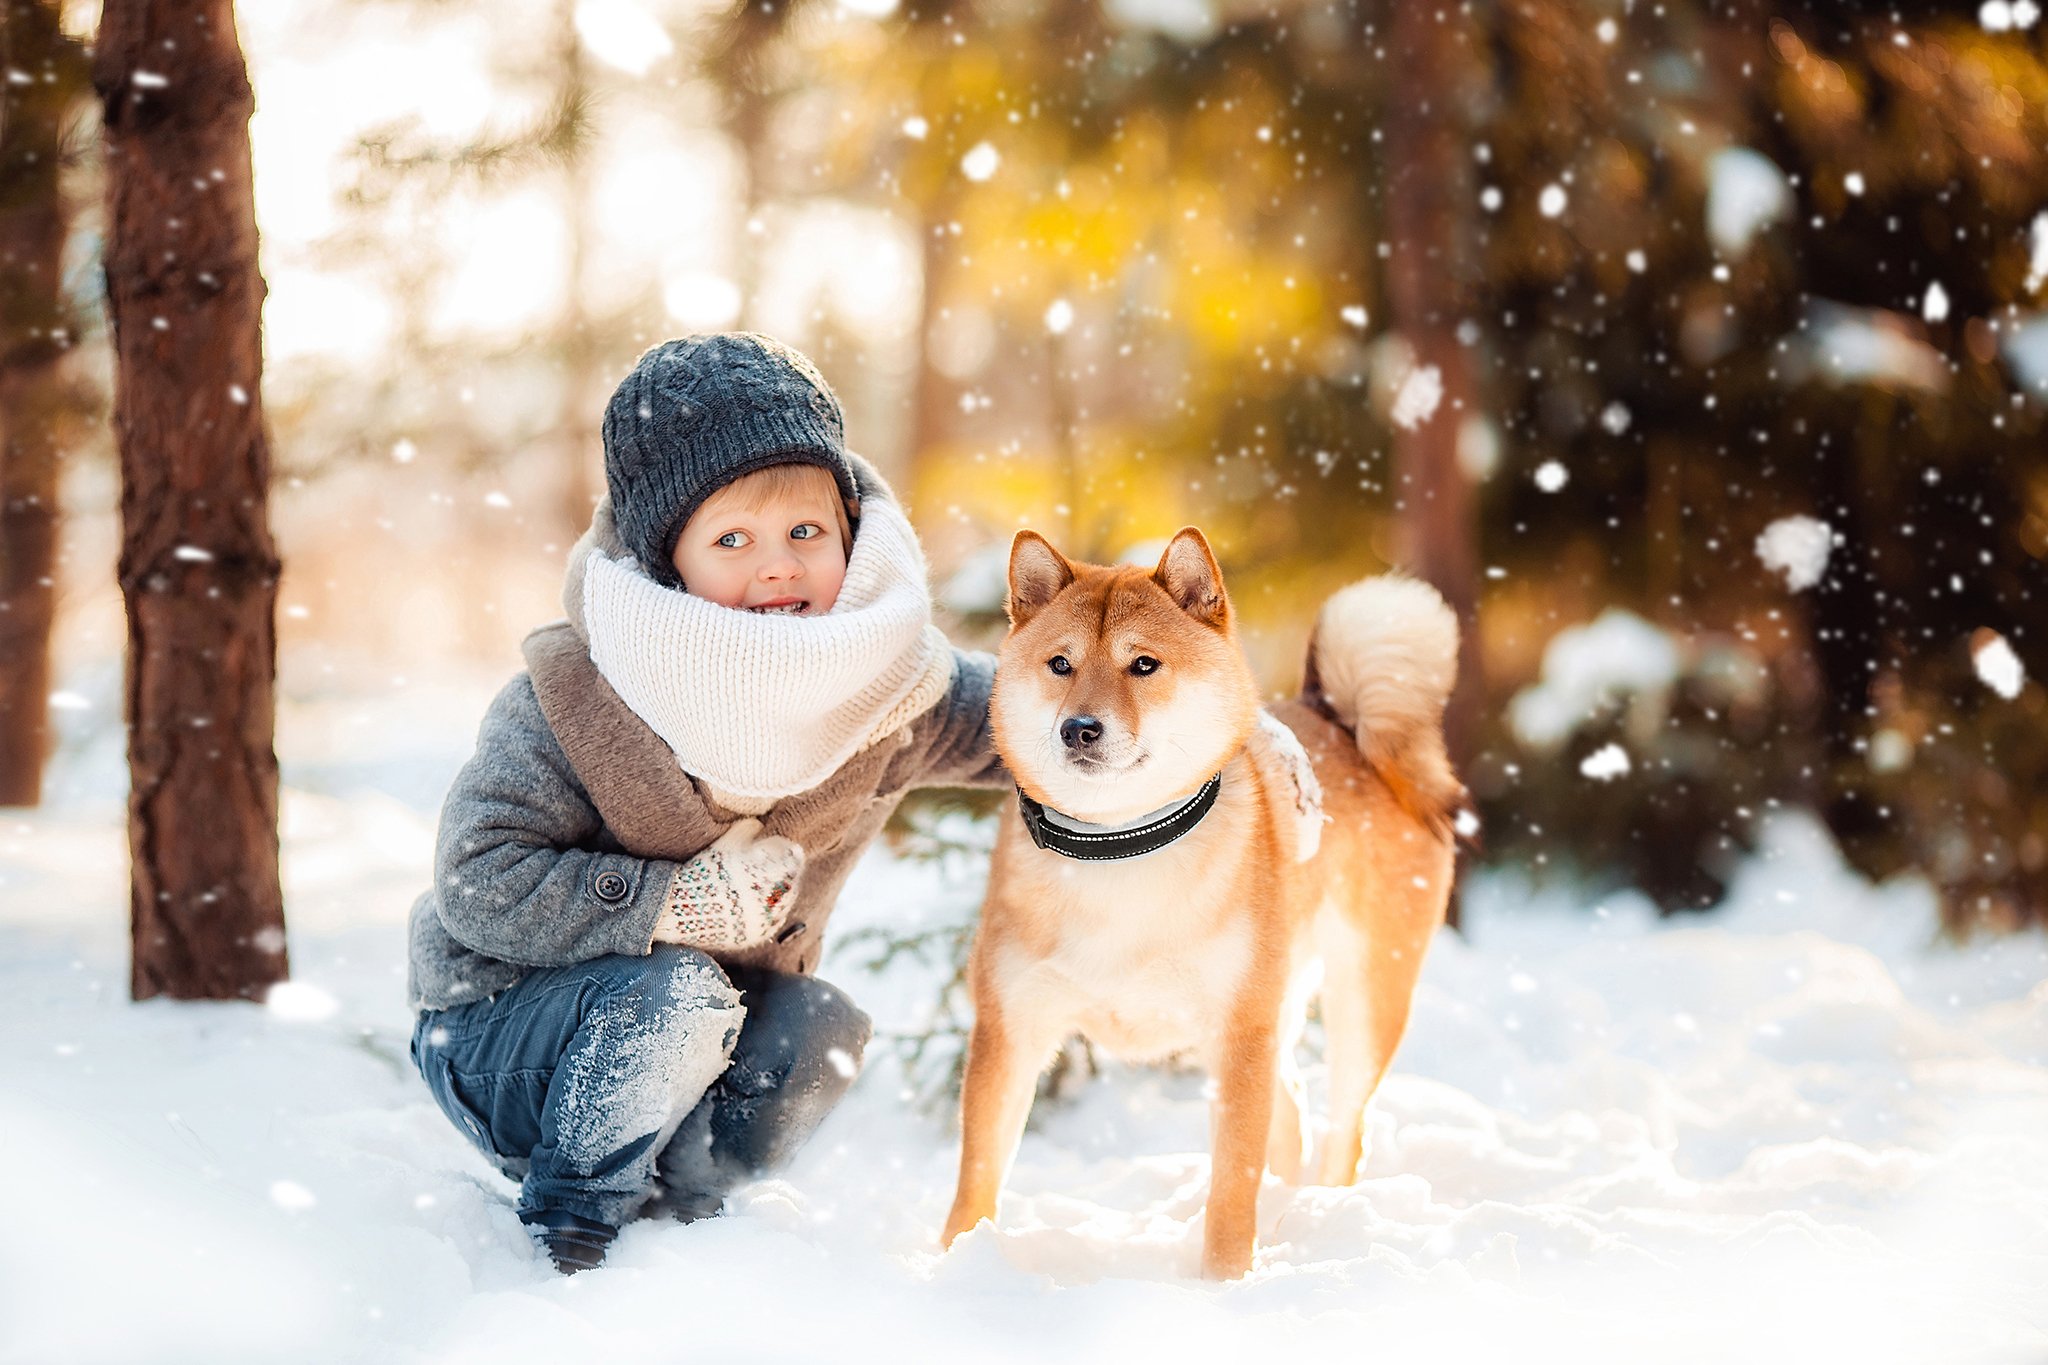 #boy #winter #snow #forest #dog #мальчик #шиба #зима #детскаяфотография, Наталья Карась